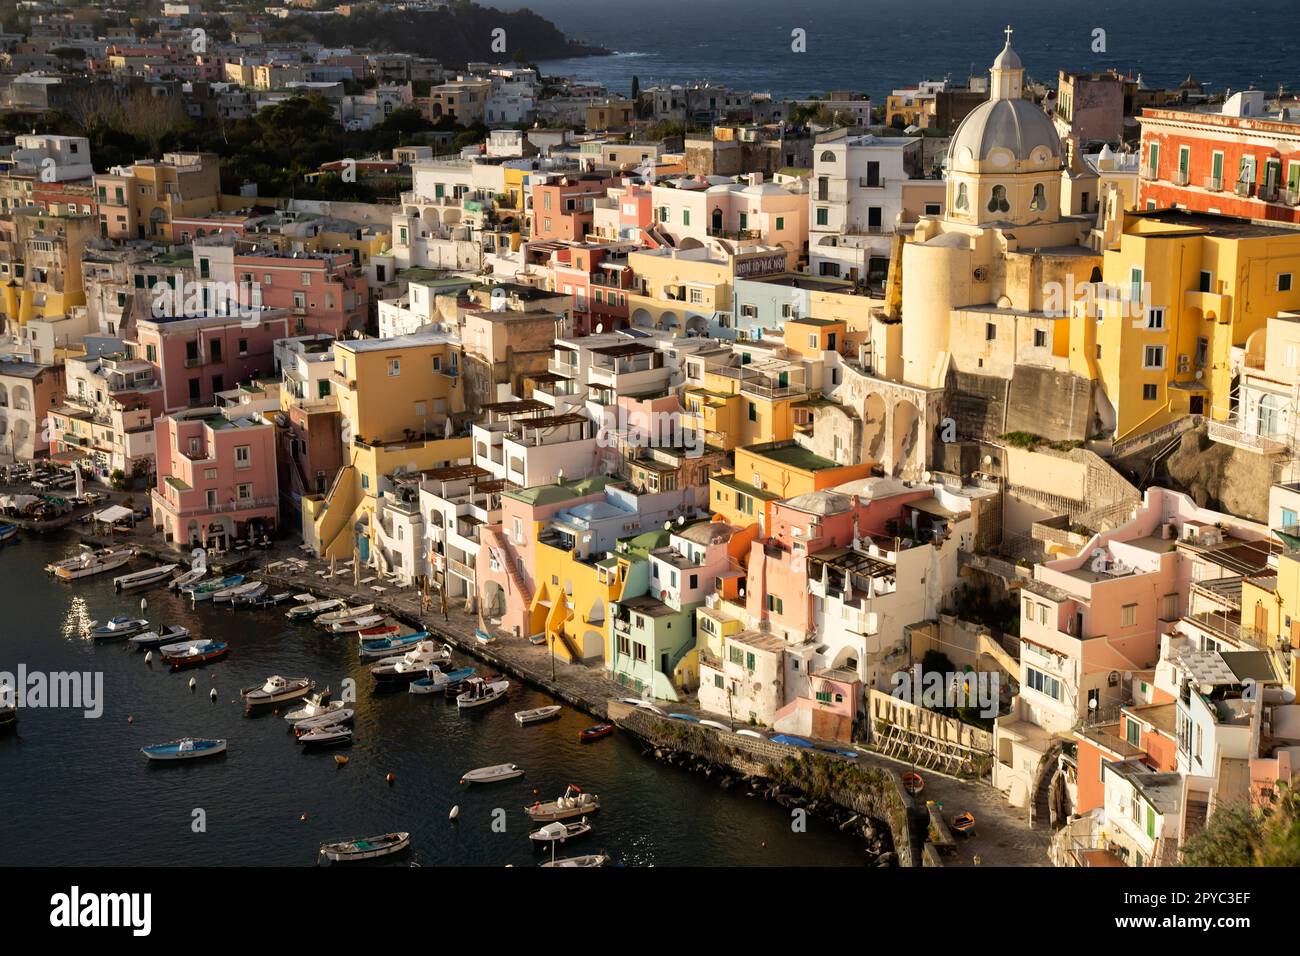 Bellissimo villaggio di pescatori, Marina Corricella sull'isola di Procida, Golfo di Napoli, Italia. Foto Stock